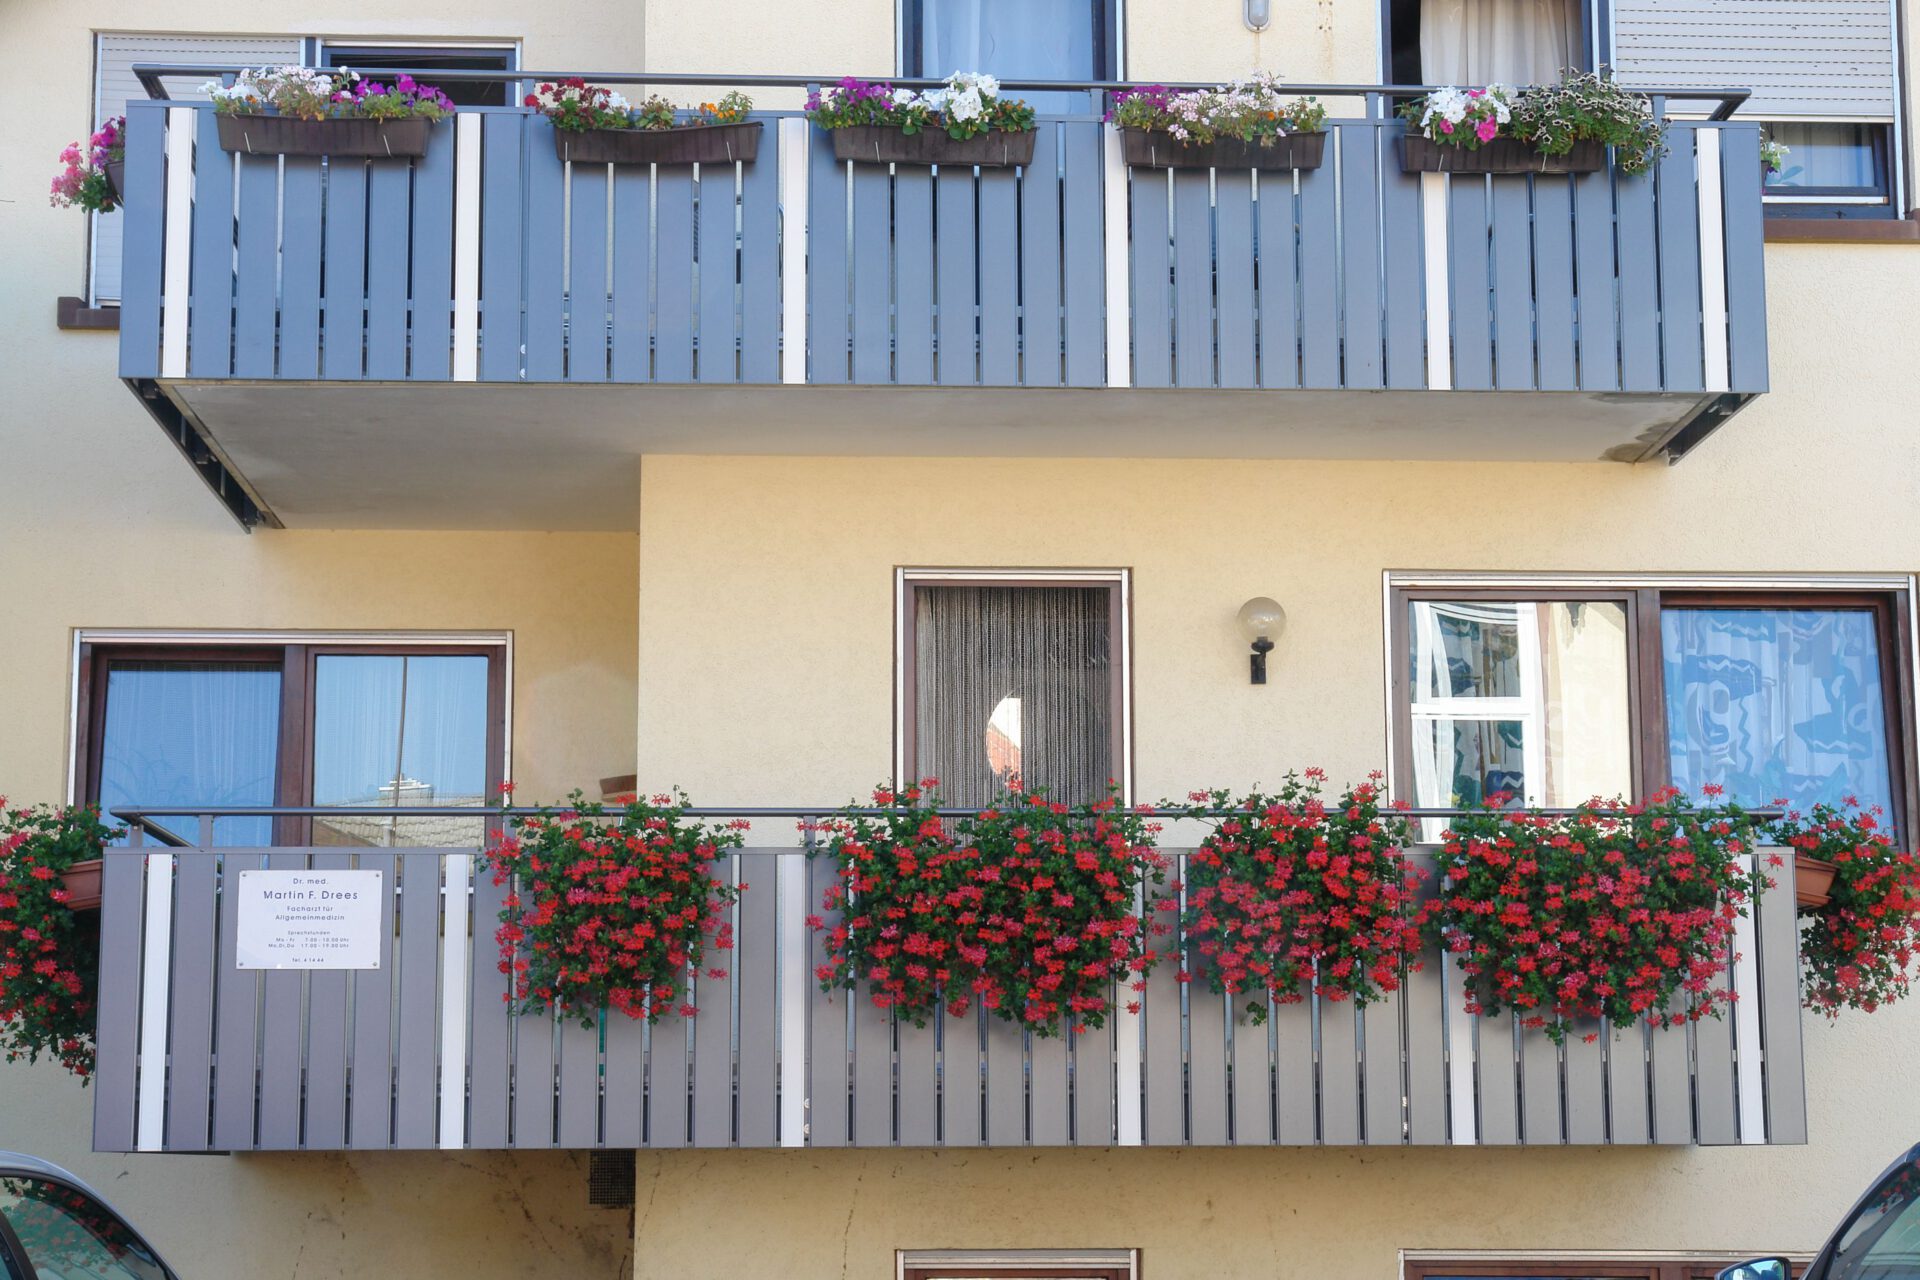 Balkongeländer modern Anthrazit. Gelbes Haus, mit einem Balkon, an dem Blumenkästen hängen. Die Balkonbretter sind aus Aluminium in der Farbe Anthrazit